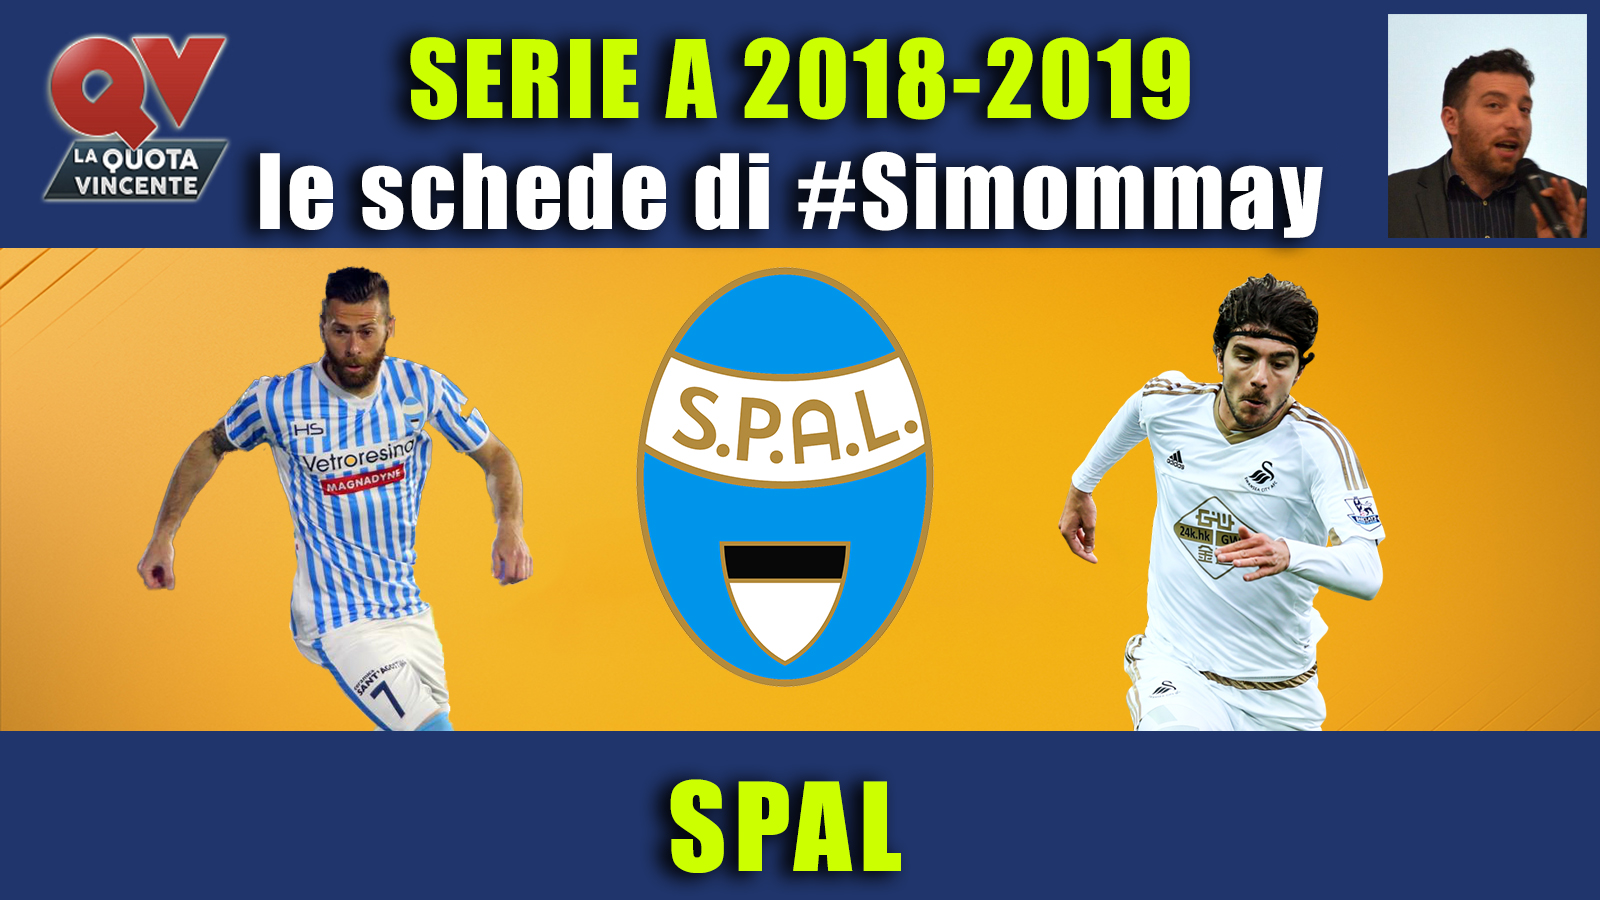 Guida Serie A 2018-2019 SPAL: ferraresi per aprire un ciclo